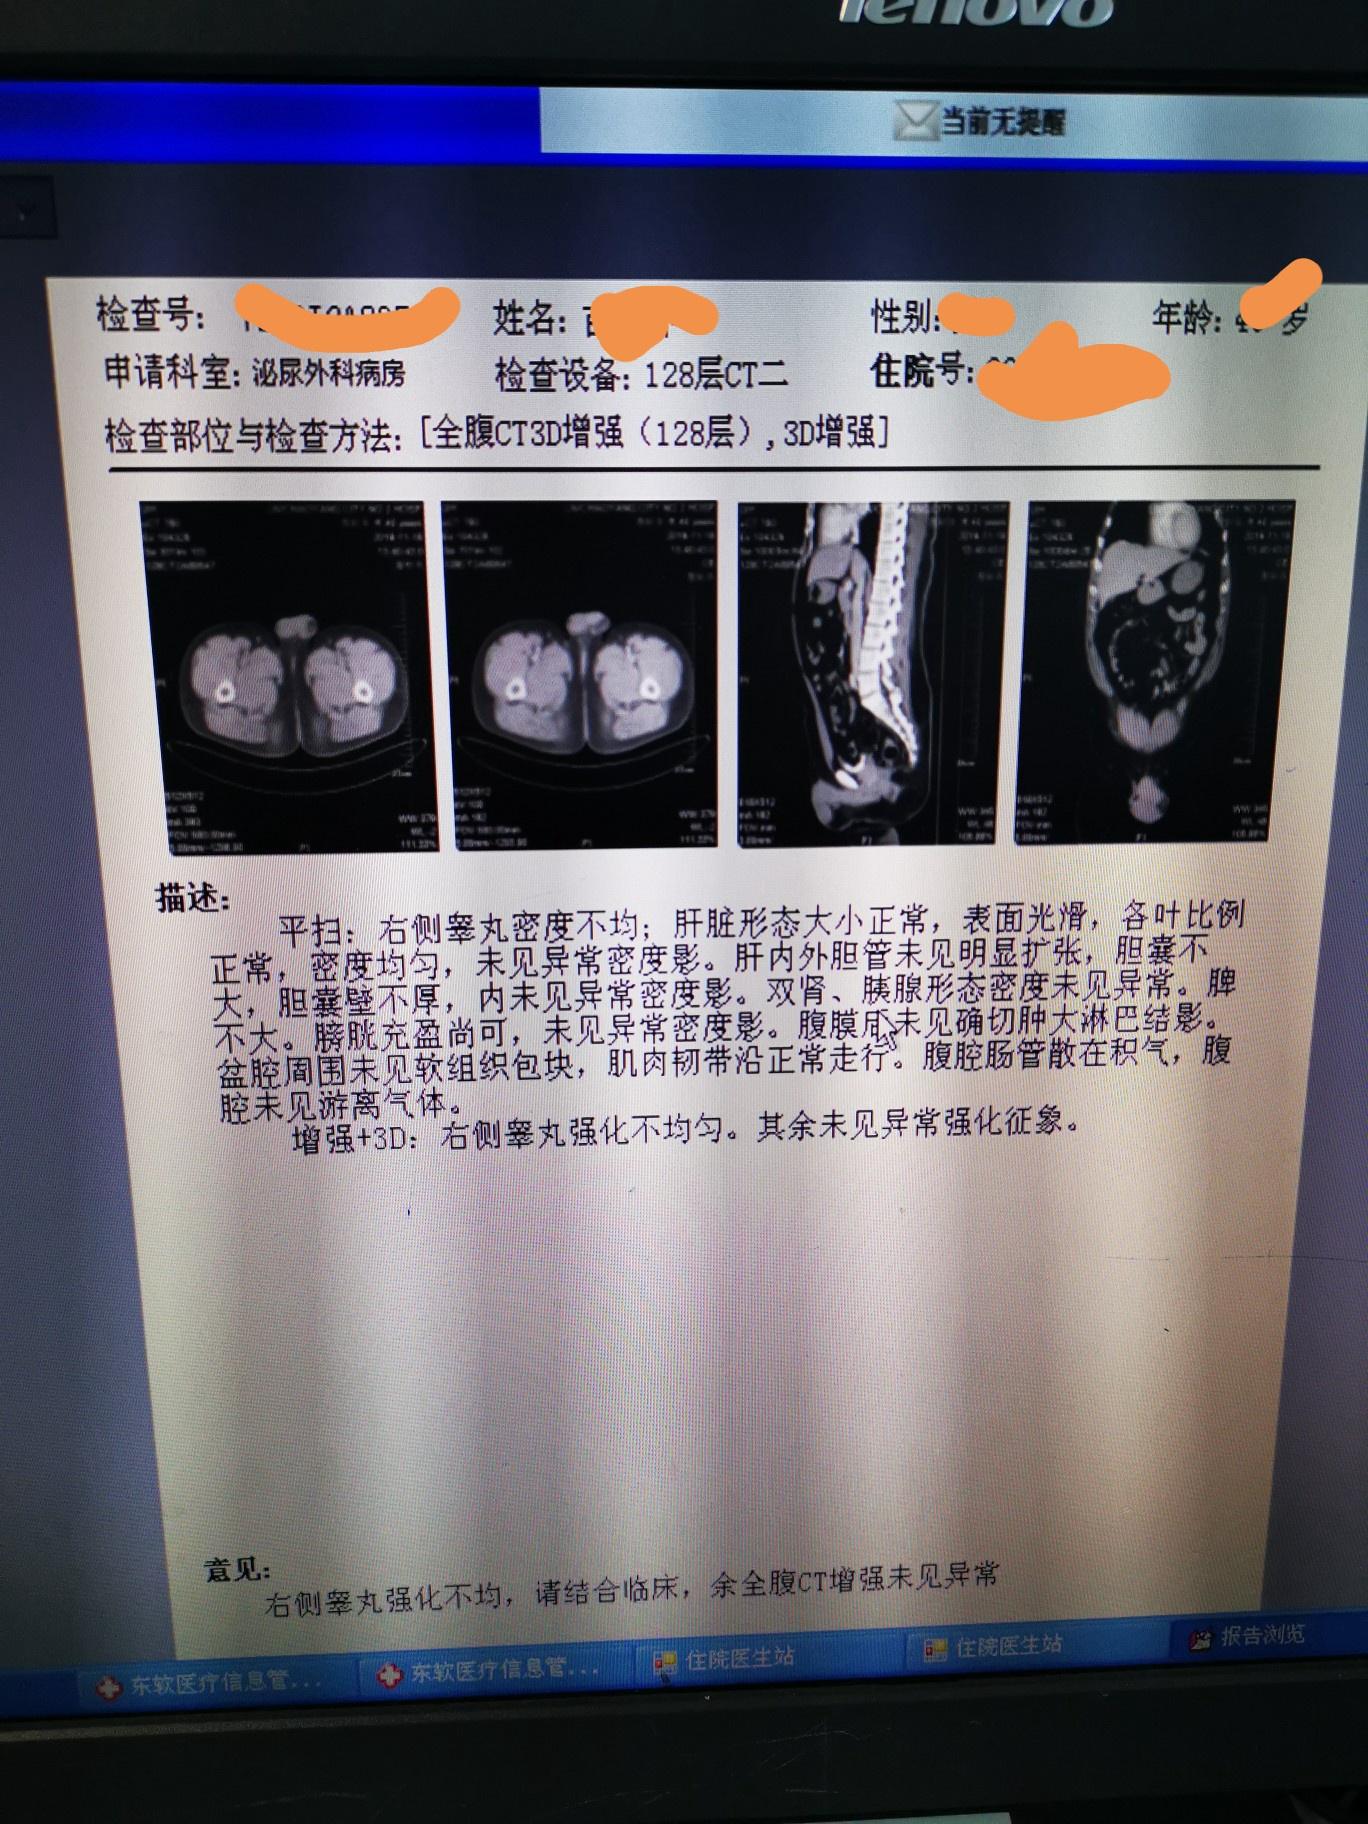 切除睾丸的手术流程_切除睾丸的手术流程是什么_北京大学第一医院_男科中心_主任医师_彭靖|视频科普| 中国医药信息查询平台